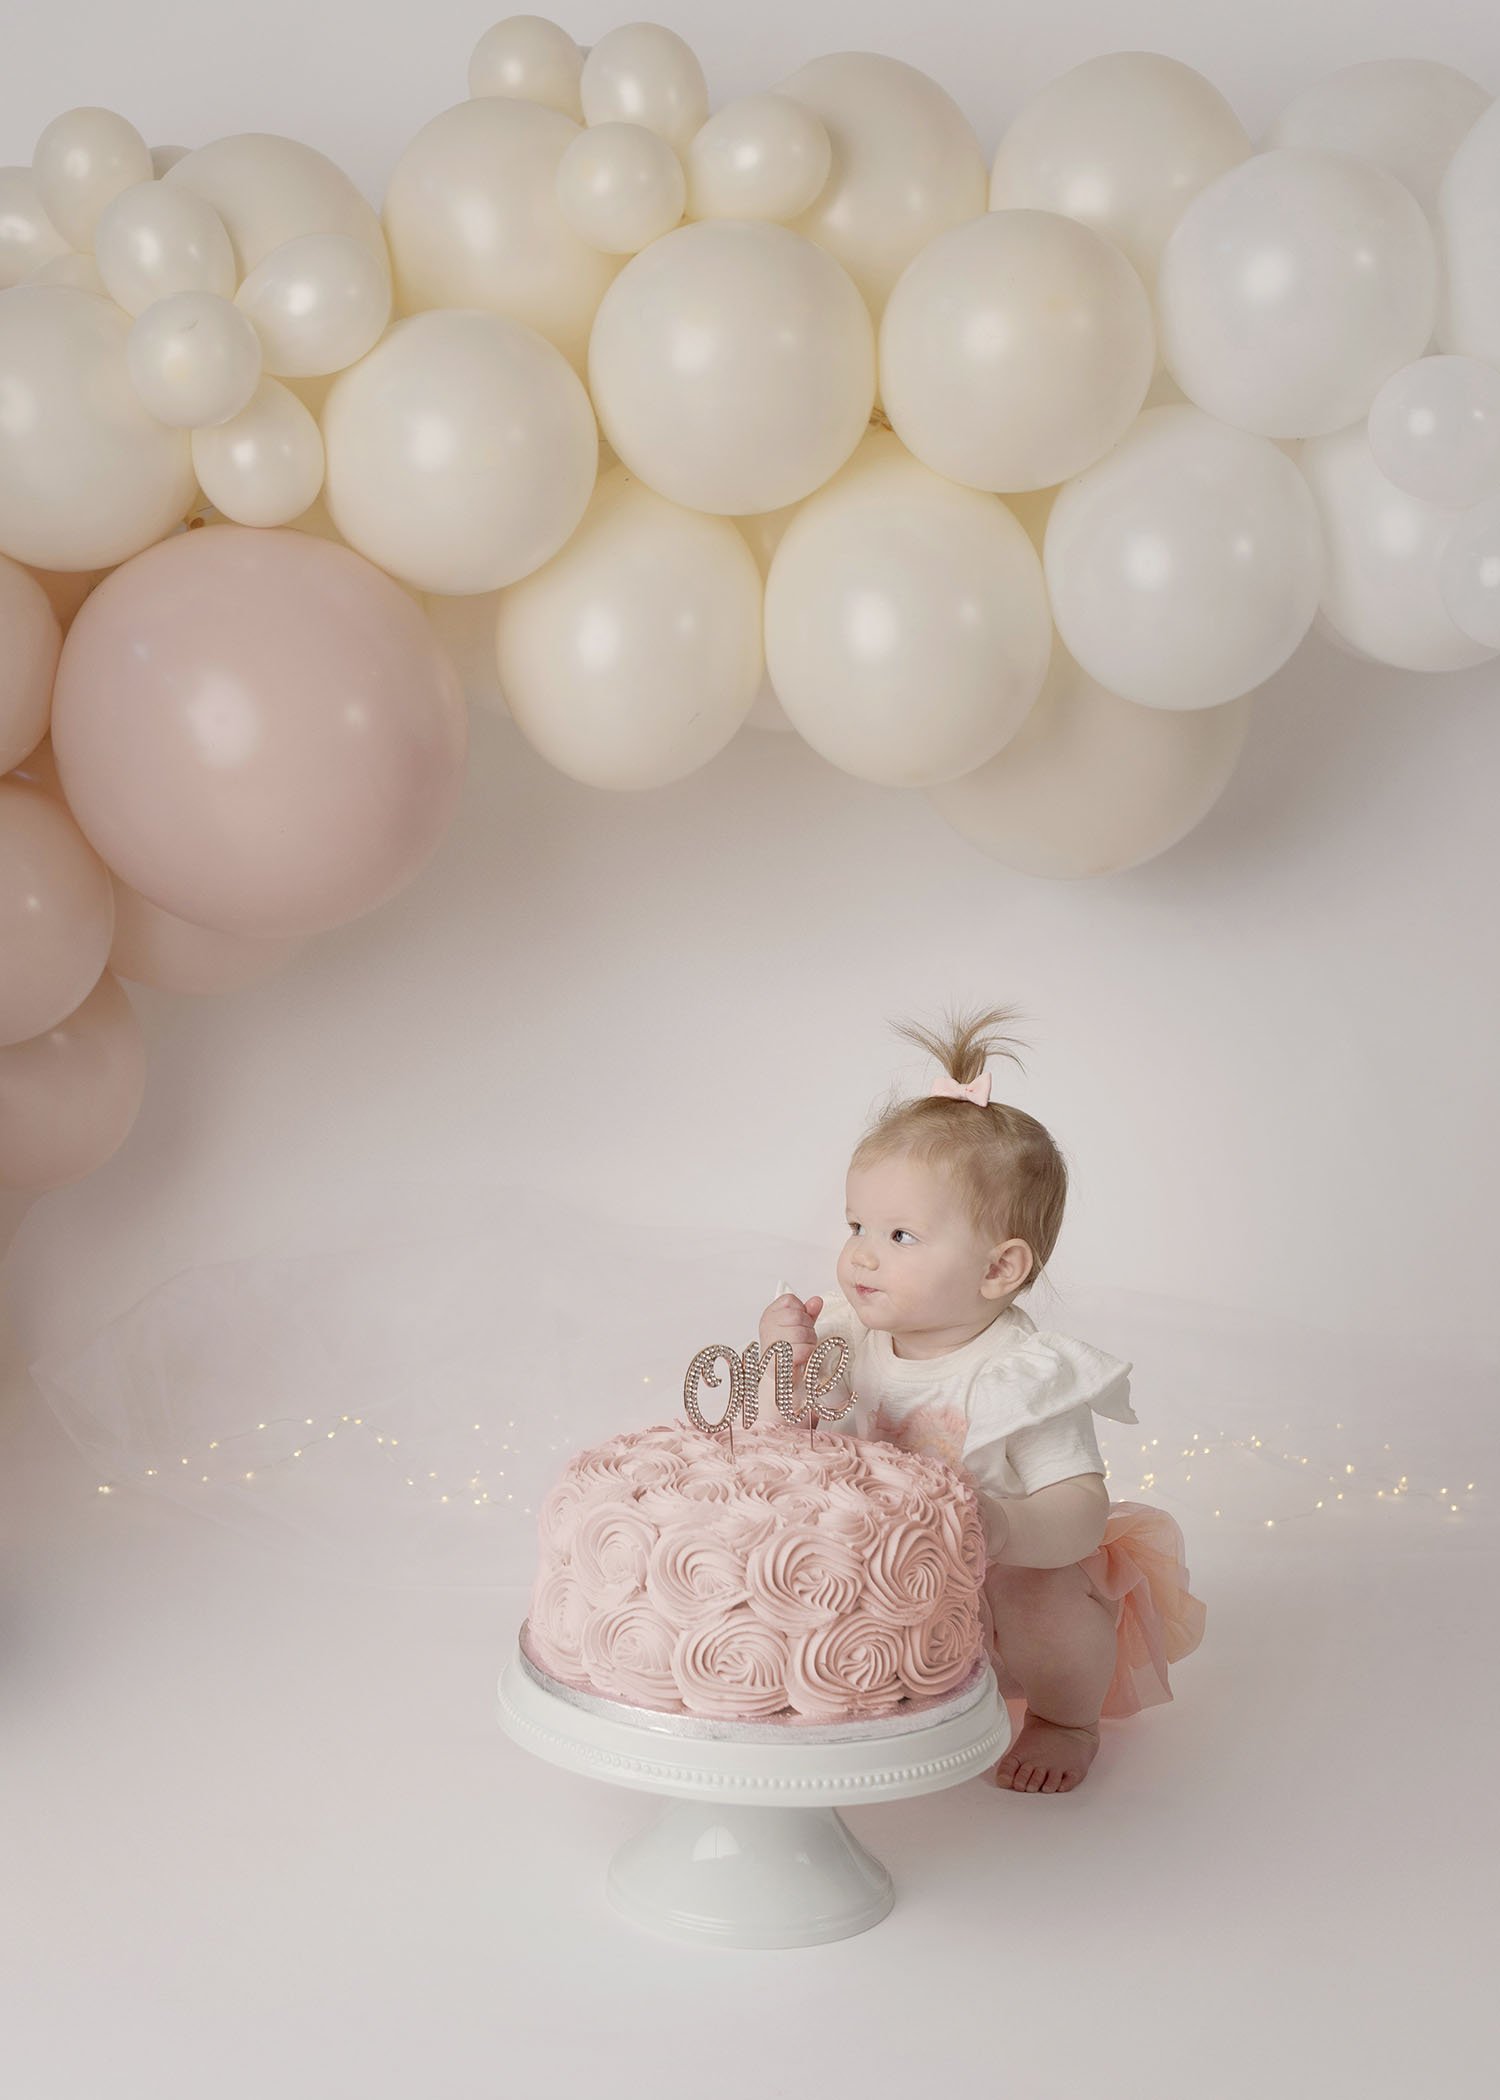 baby girl birthday cake smash photo pink.jpg